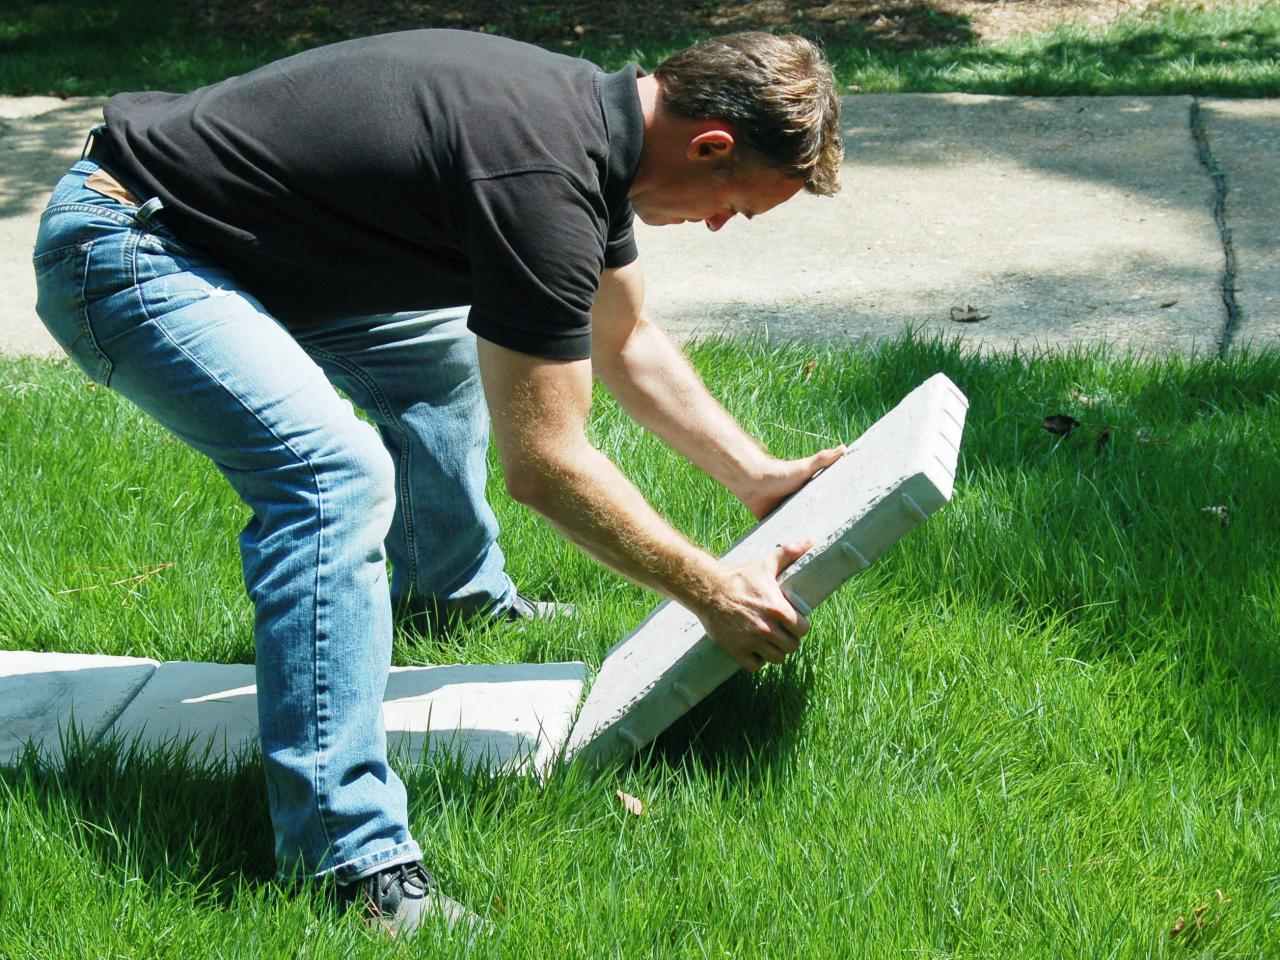 Building A Paver Patio How Tos Diy - Diy Patio Pavers Over Grass